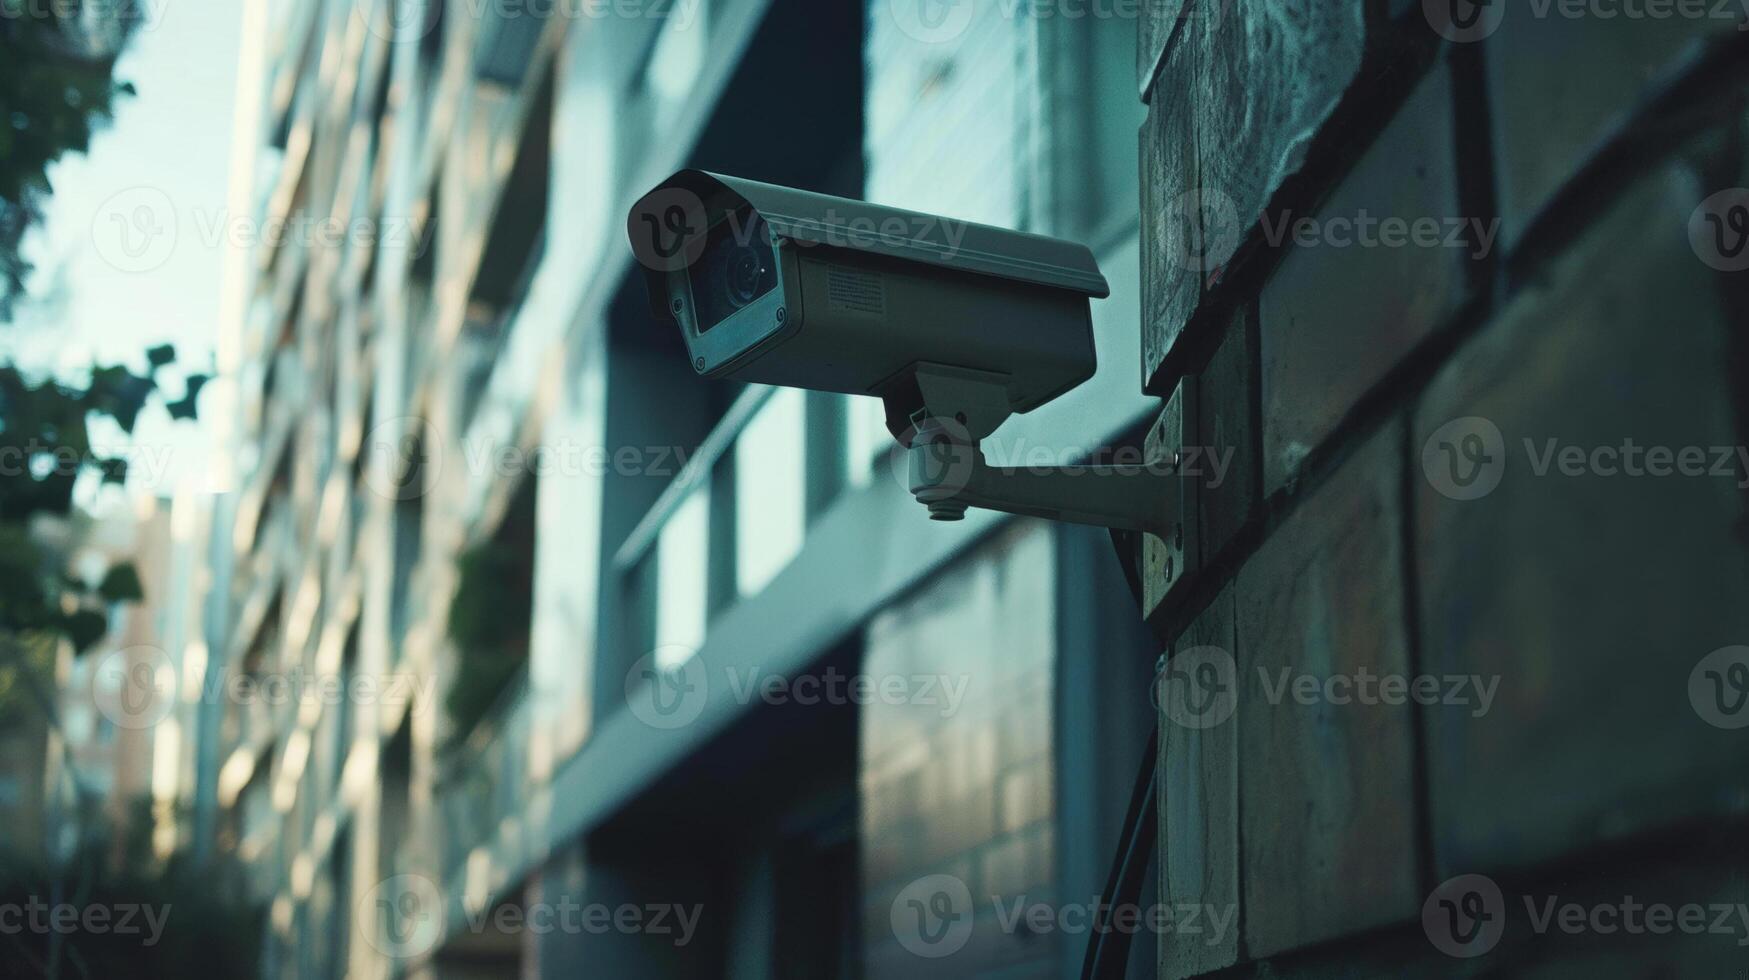 seguridad cámara imágenes de un robo en progreso, urbano crimen foto